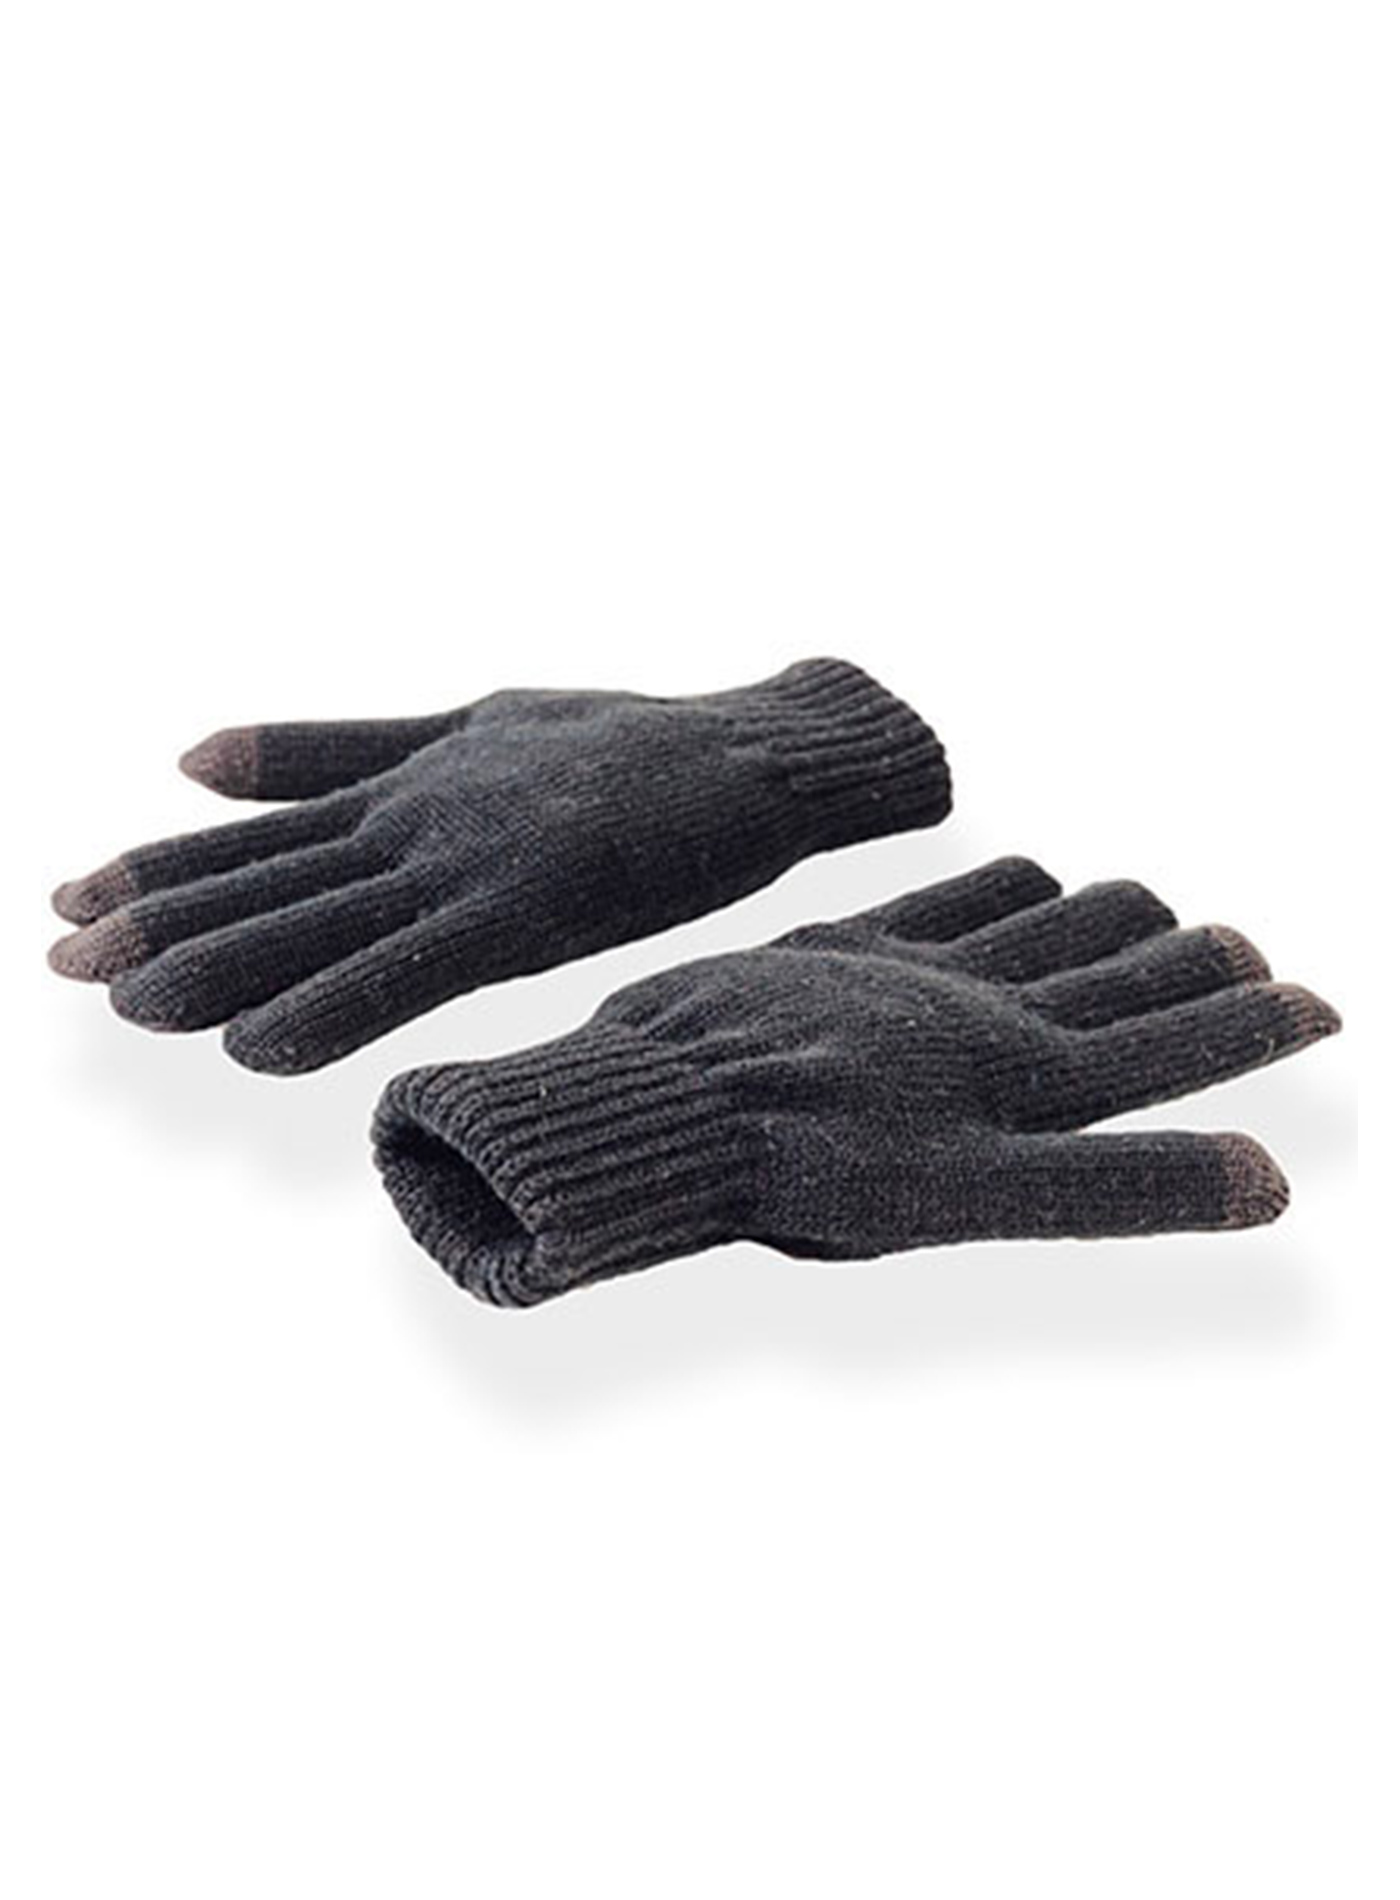 Unisex zimní dotykové rukavice Atlantis Touch - Šedá S/M